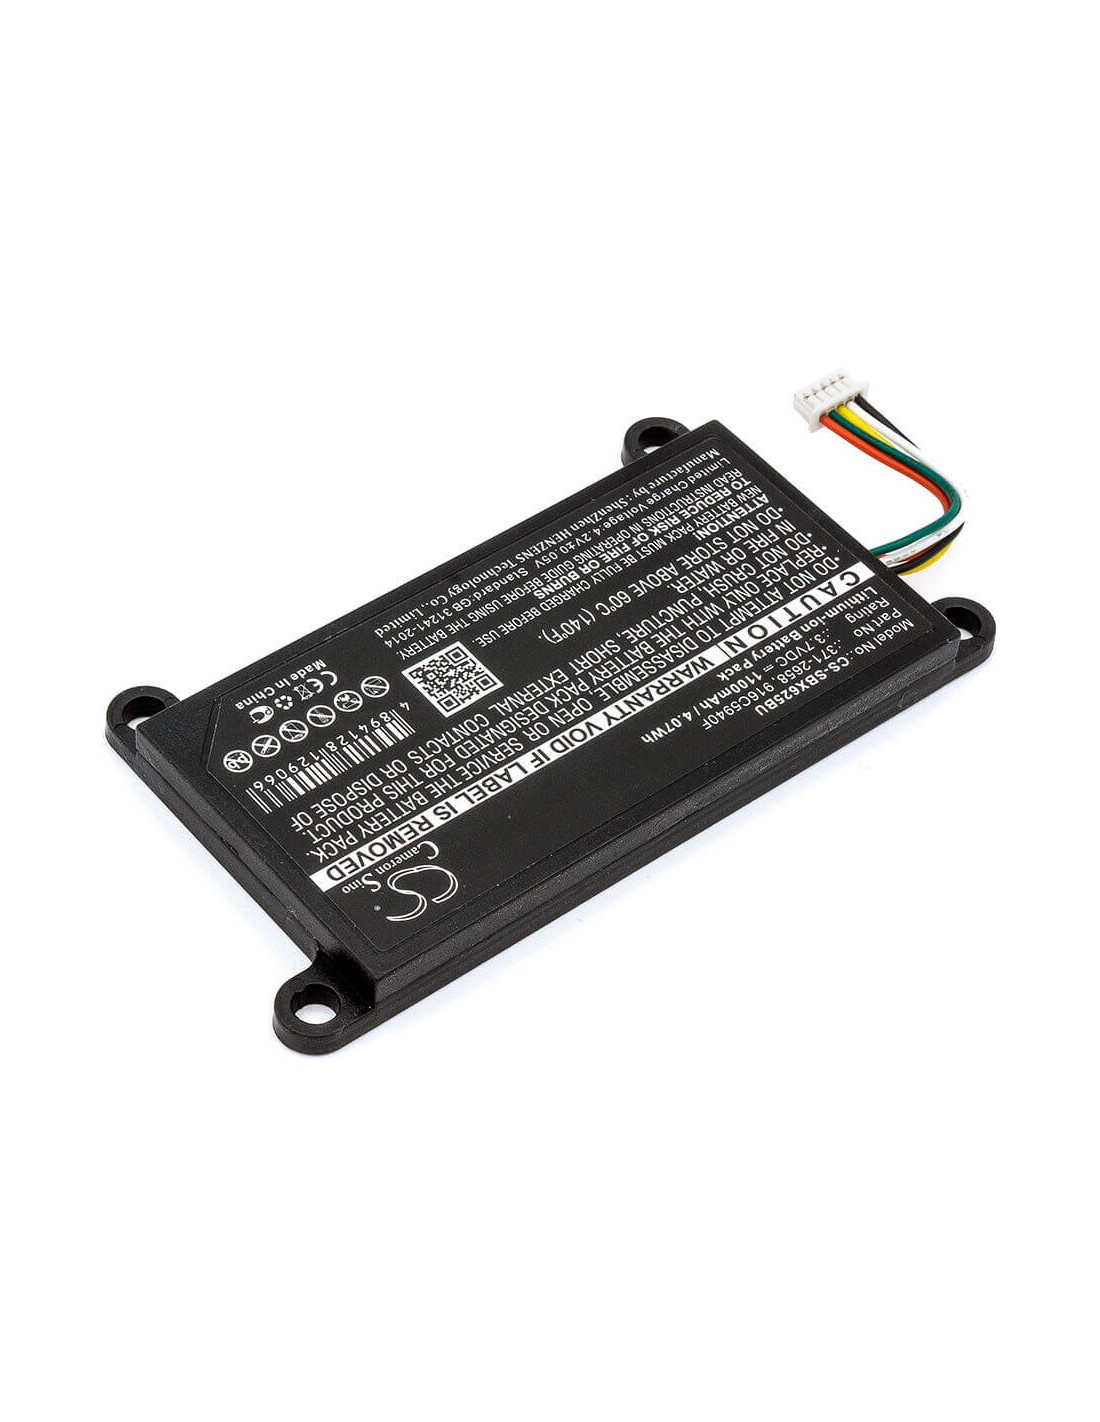 Battery for Sun, Blade Raid Card 5, Blade X6250, Xeon E5450 3.7V, 1100mAh - 4.07Wh